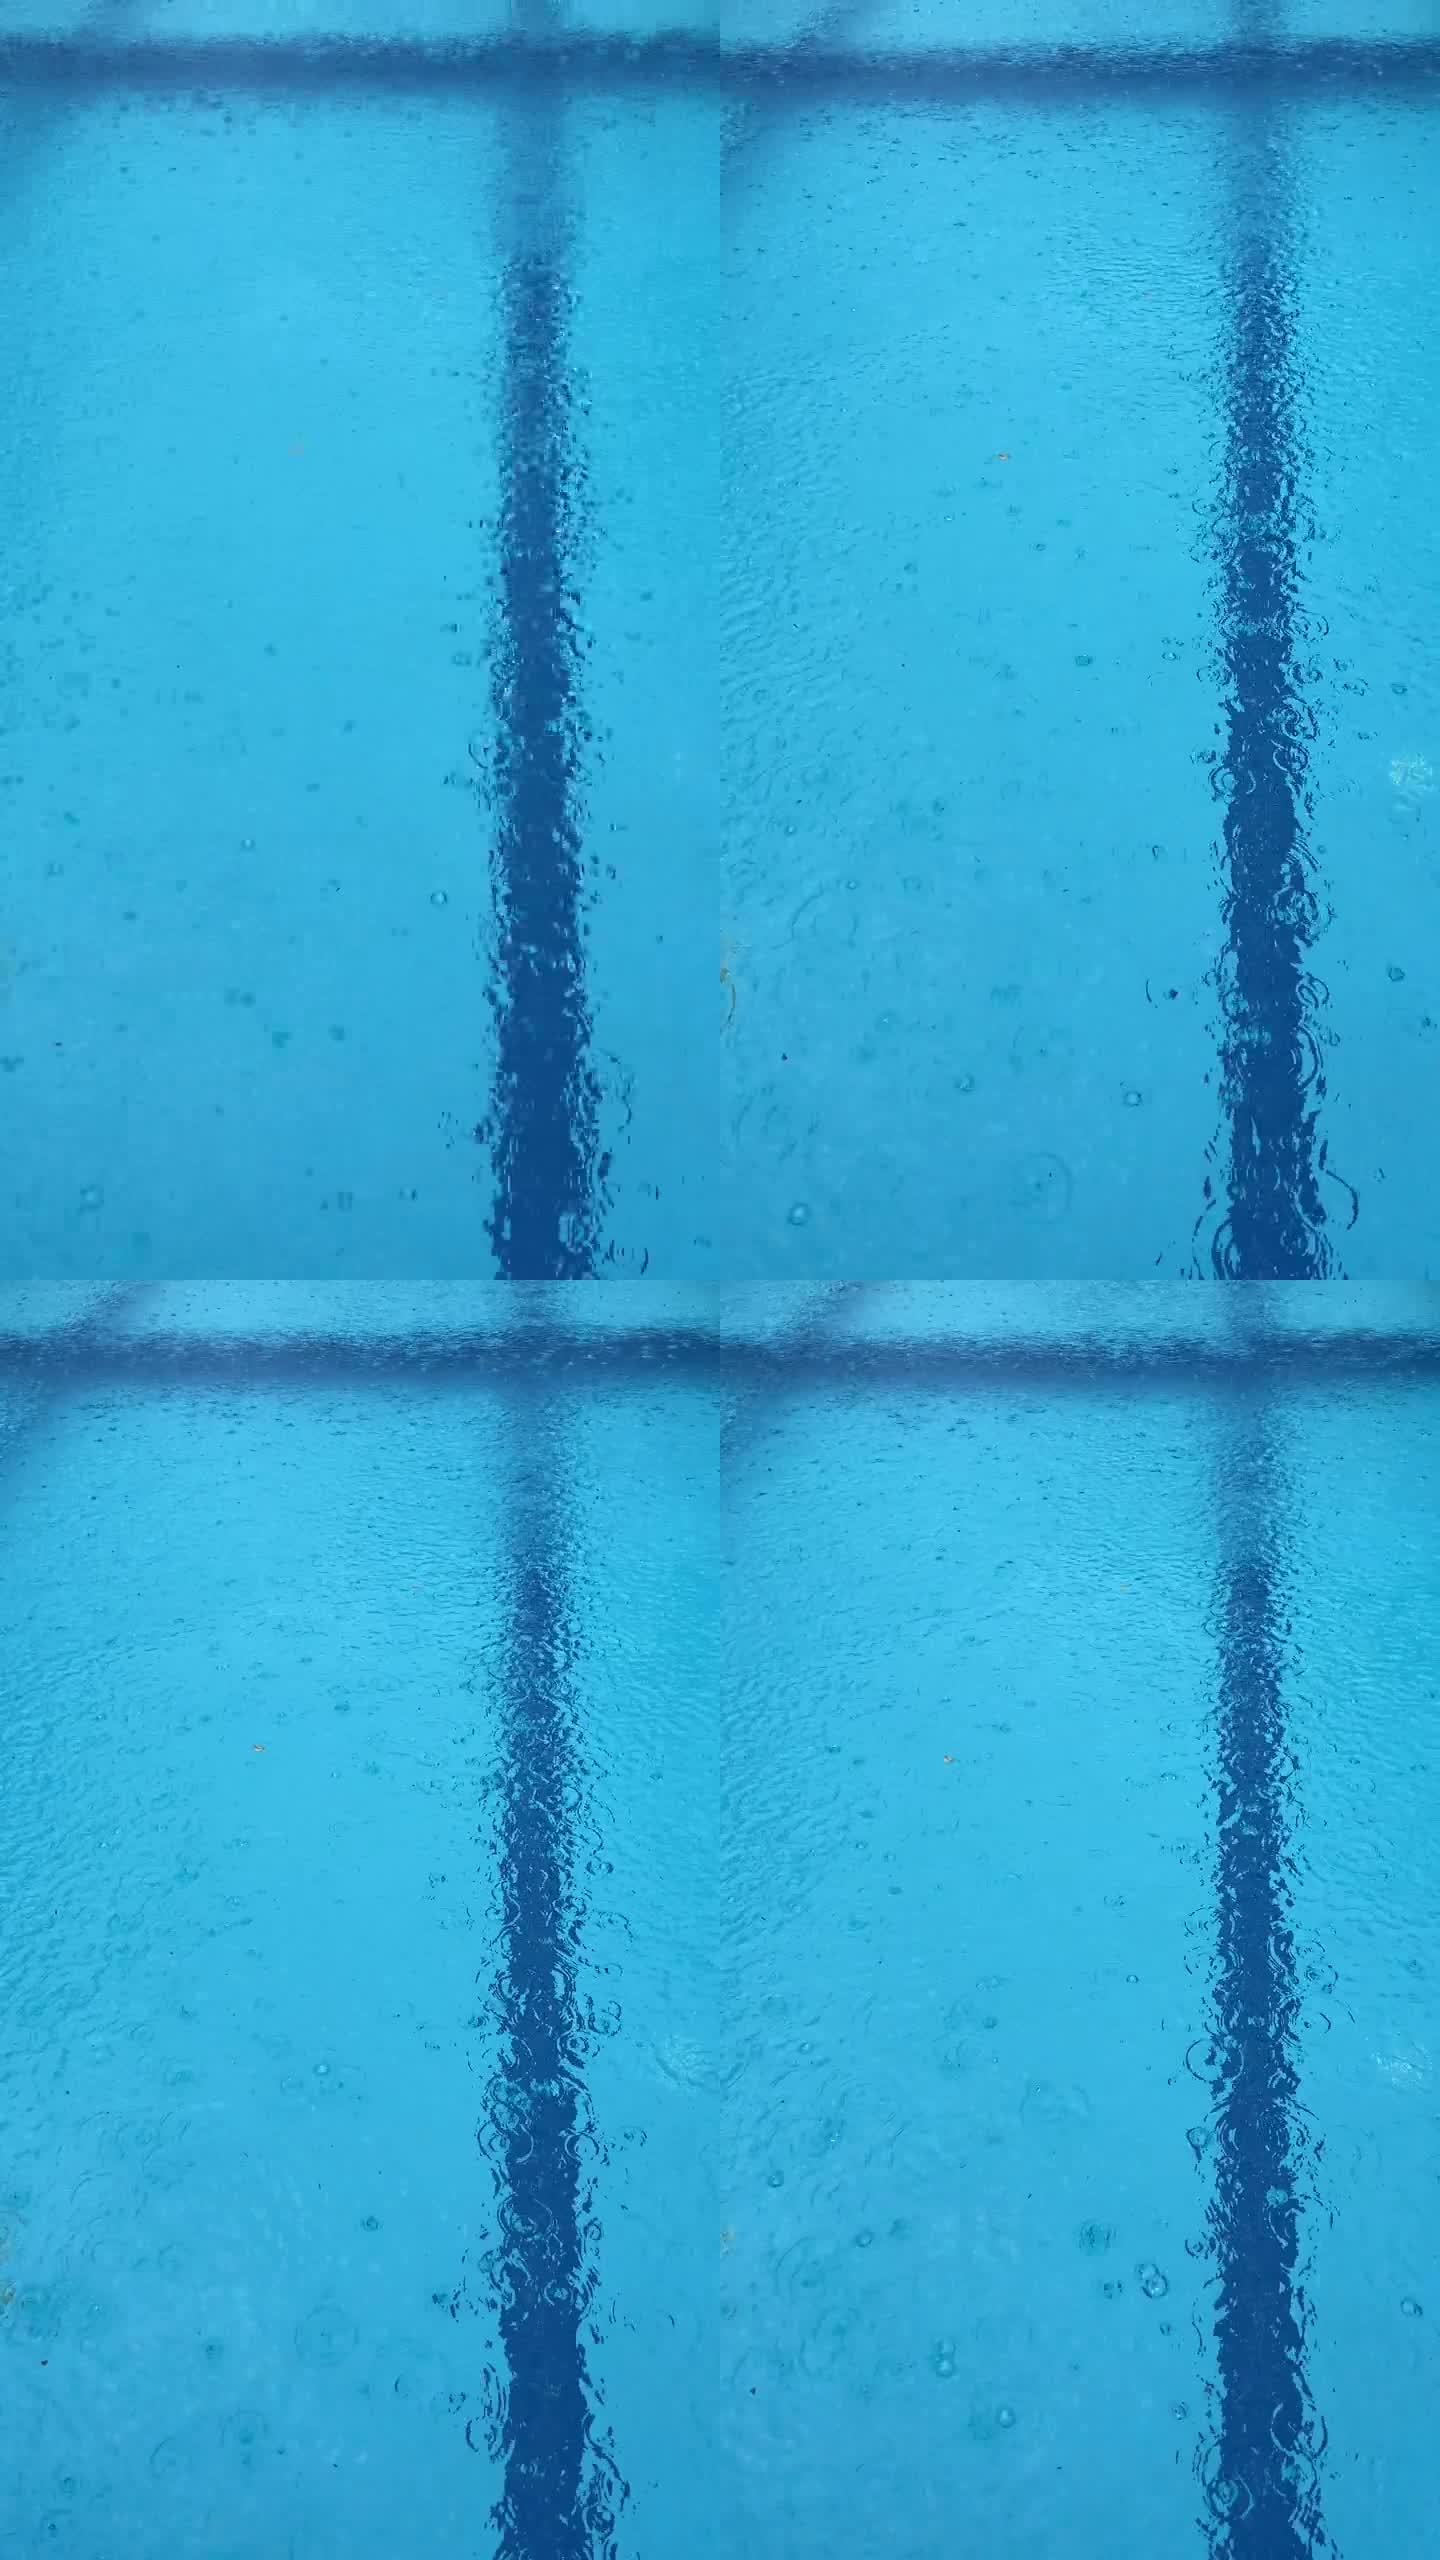 大雨打在泳池表面。雨滴在水面上产生气泡